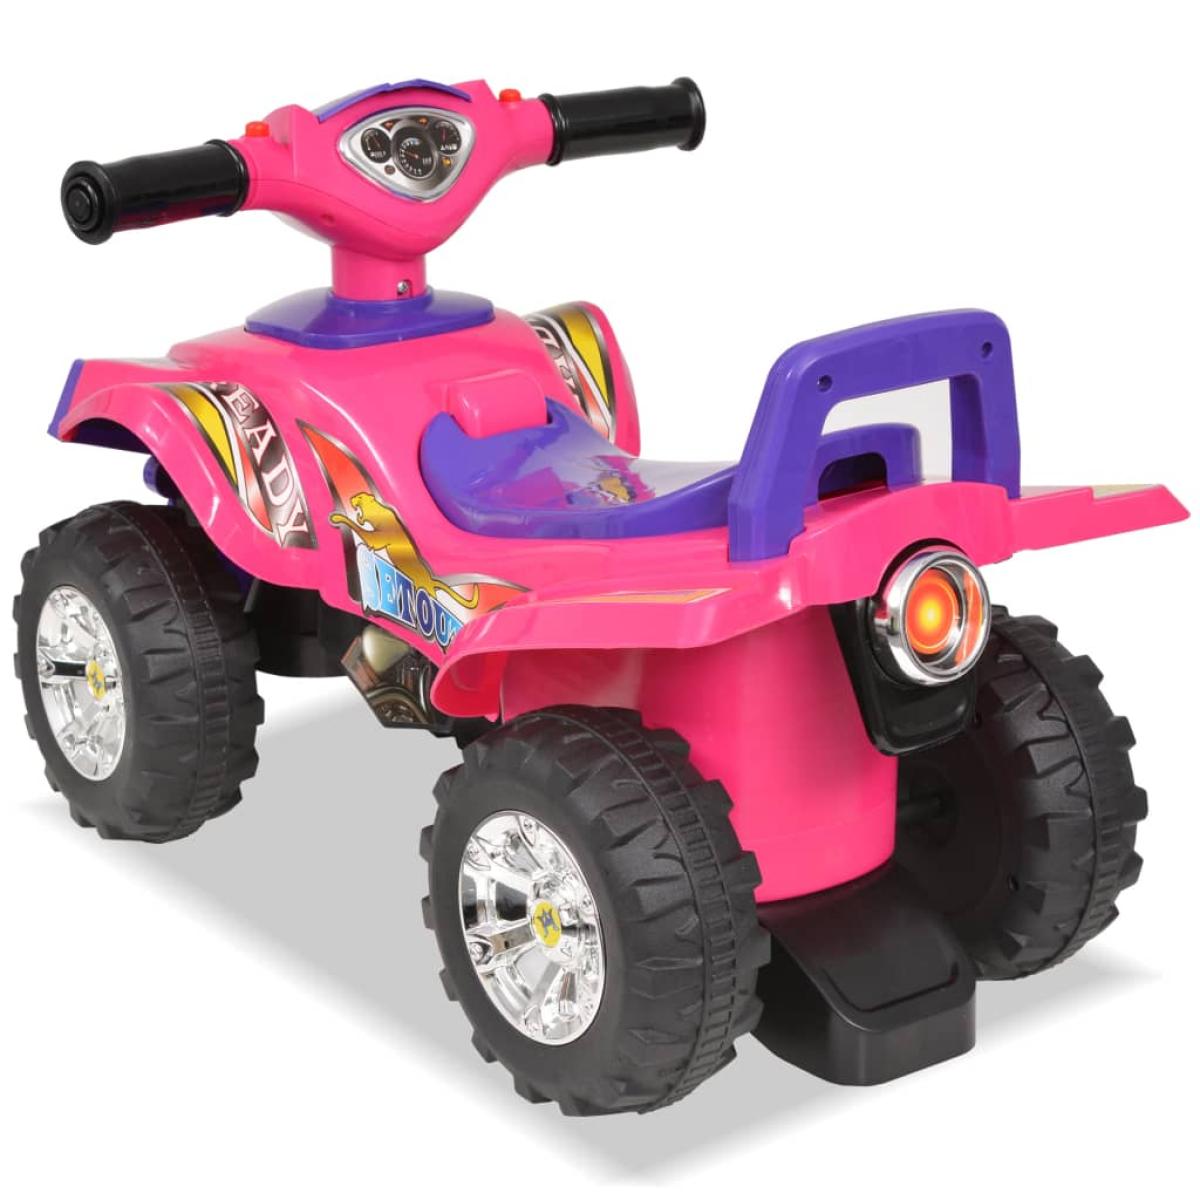 Quad ATV correpasillos infantil con sonidos y luces rosa morado